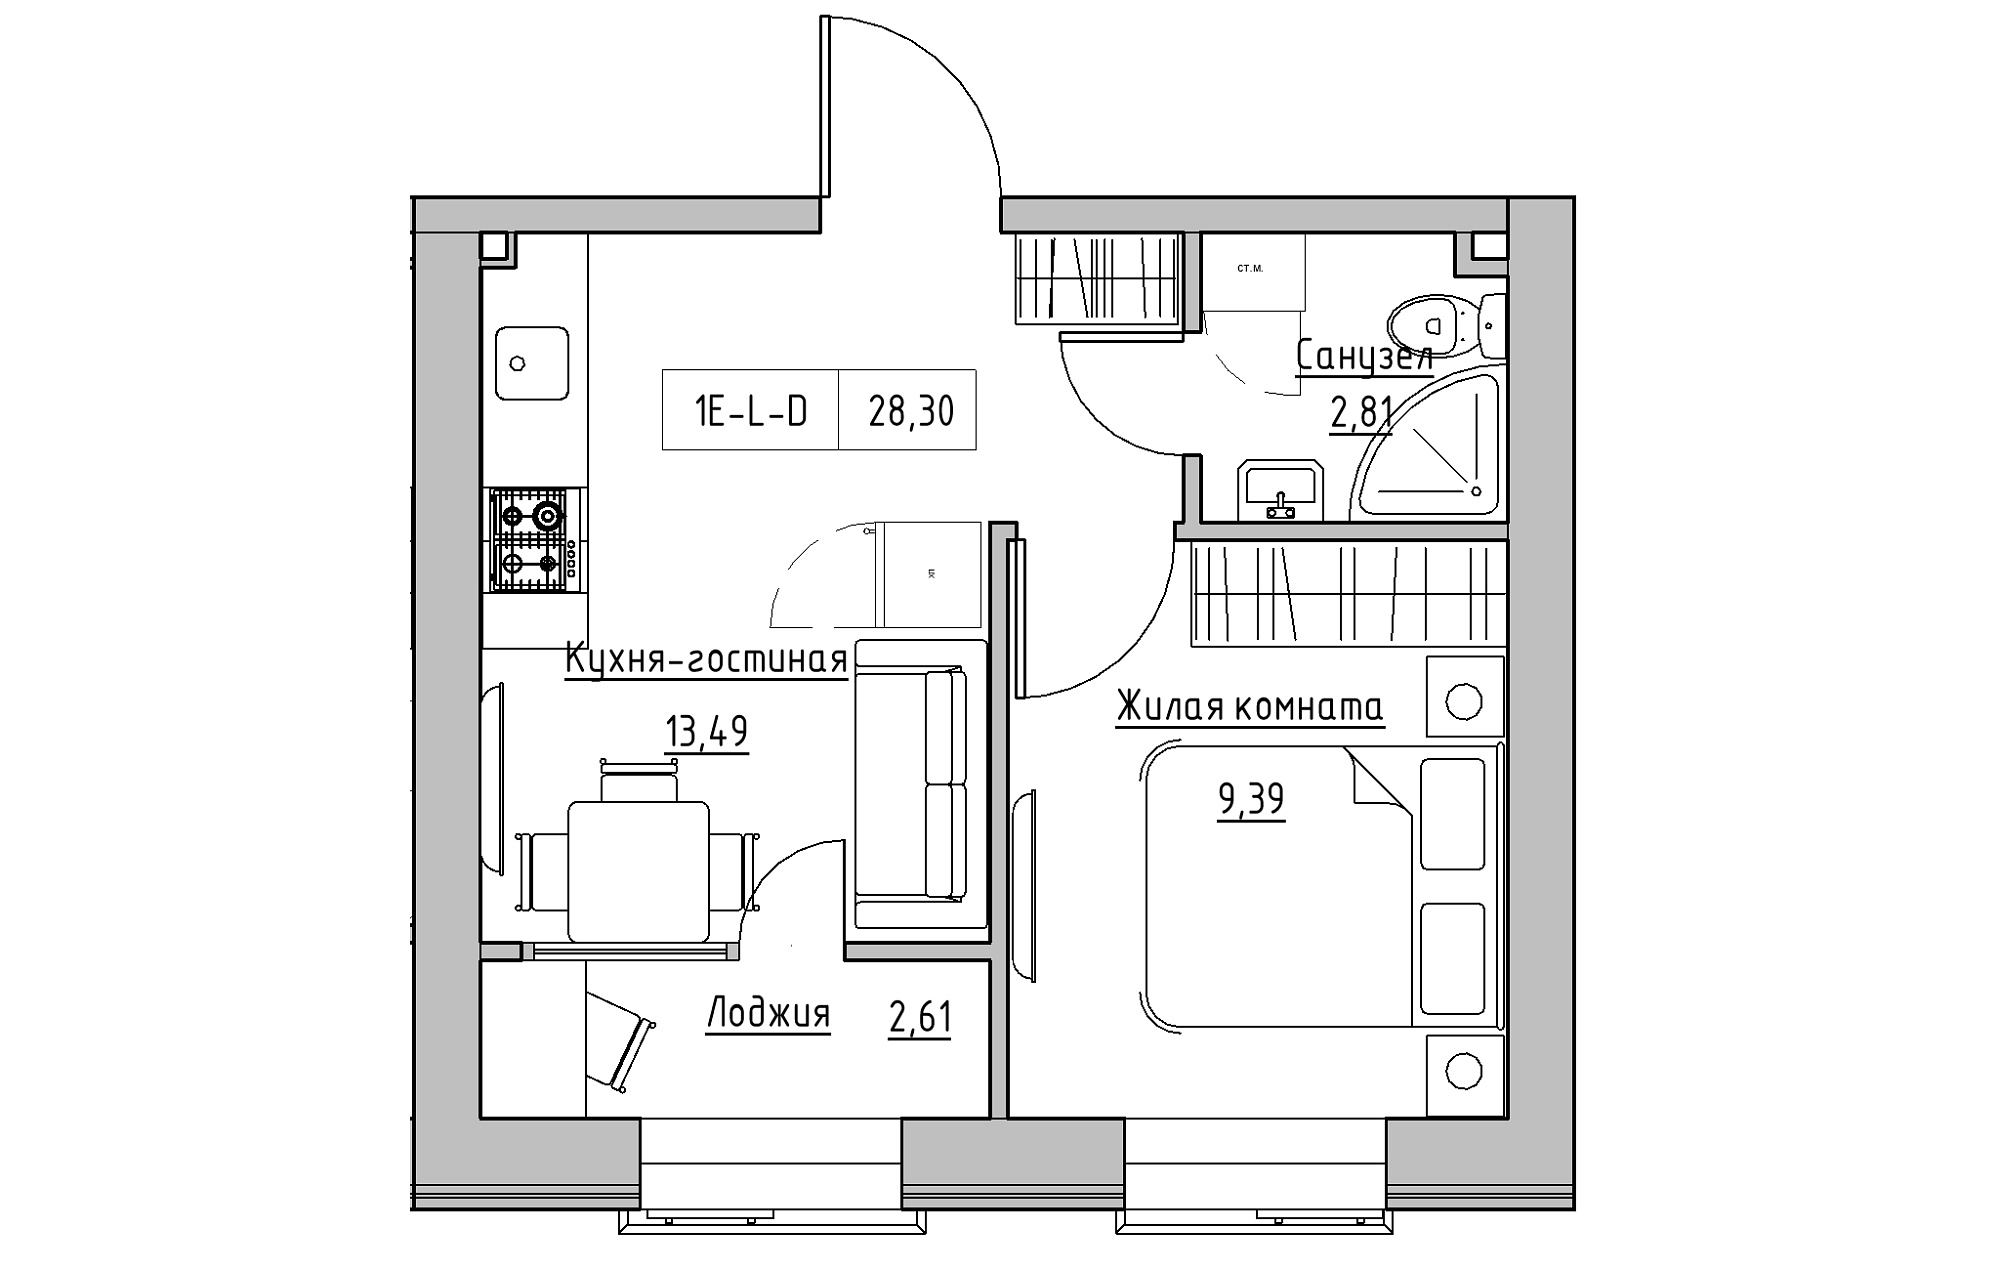 Планировка 1-к квартира площей 28.3м2, KS-018-04/0001.